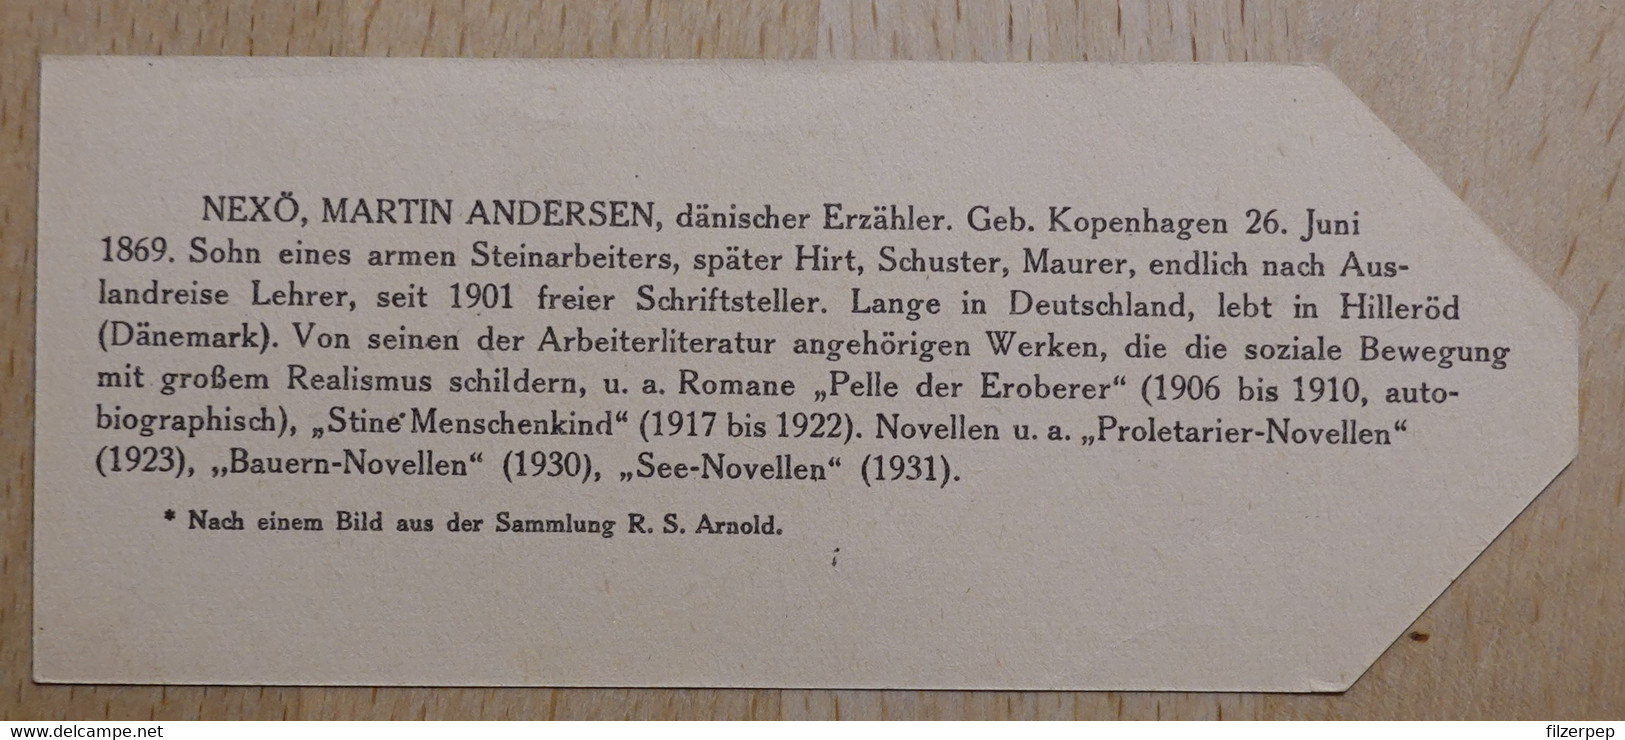 Martin Andersen Nexö Erzähler Kopenhagen - 750 - Olleschau Lesezeichen Bookmark Signet Marque Page Portrait - Marque-Pages